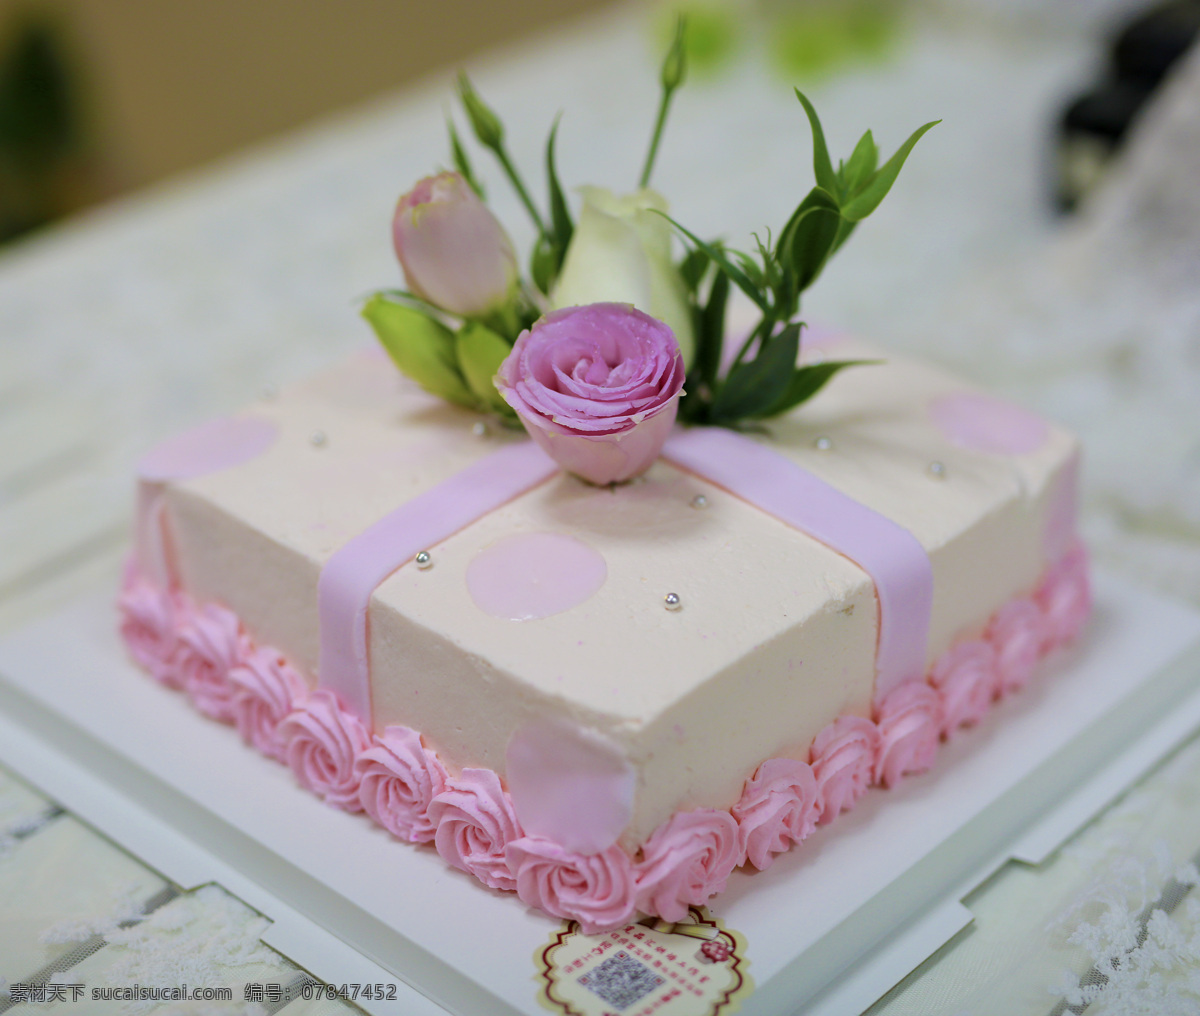 粉红方形蛋糕 粉红 方形 蛋糕 美食 鲜花蛋糕 好看 美观 餐饮美食 西餐美食